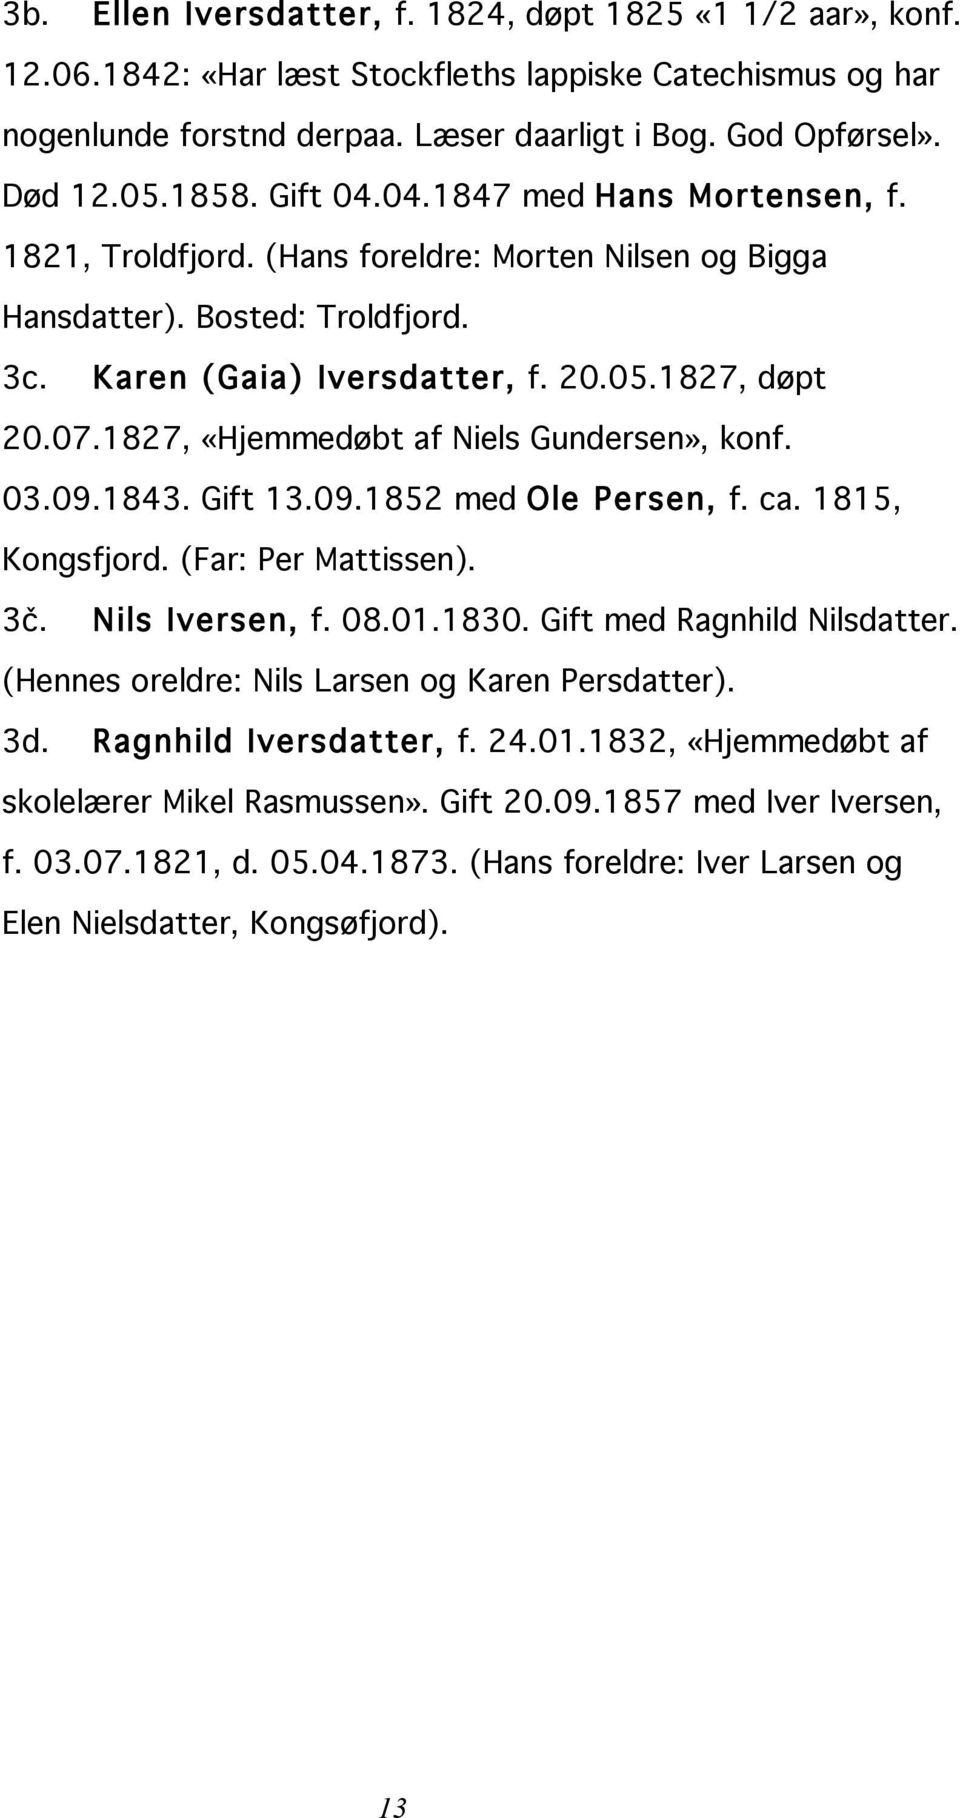 1827, «Hjemmedøbt af Niels Gundersen», konf. 03.09.1843. Gift 13.09.1852 med Ole Persen, f. ca. 1815, Kongsfjord. (Far: Per Mattissen). 3č. Nils Iversen, f. 08.01.1830. Gift med Ragnhild Nilsdatter.